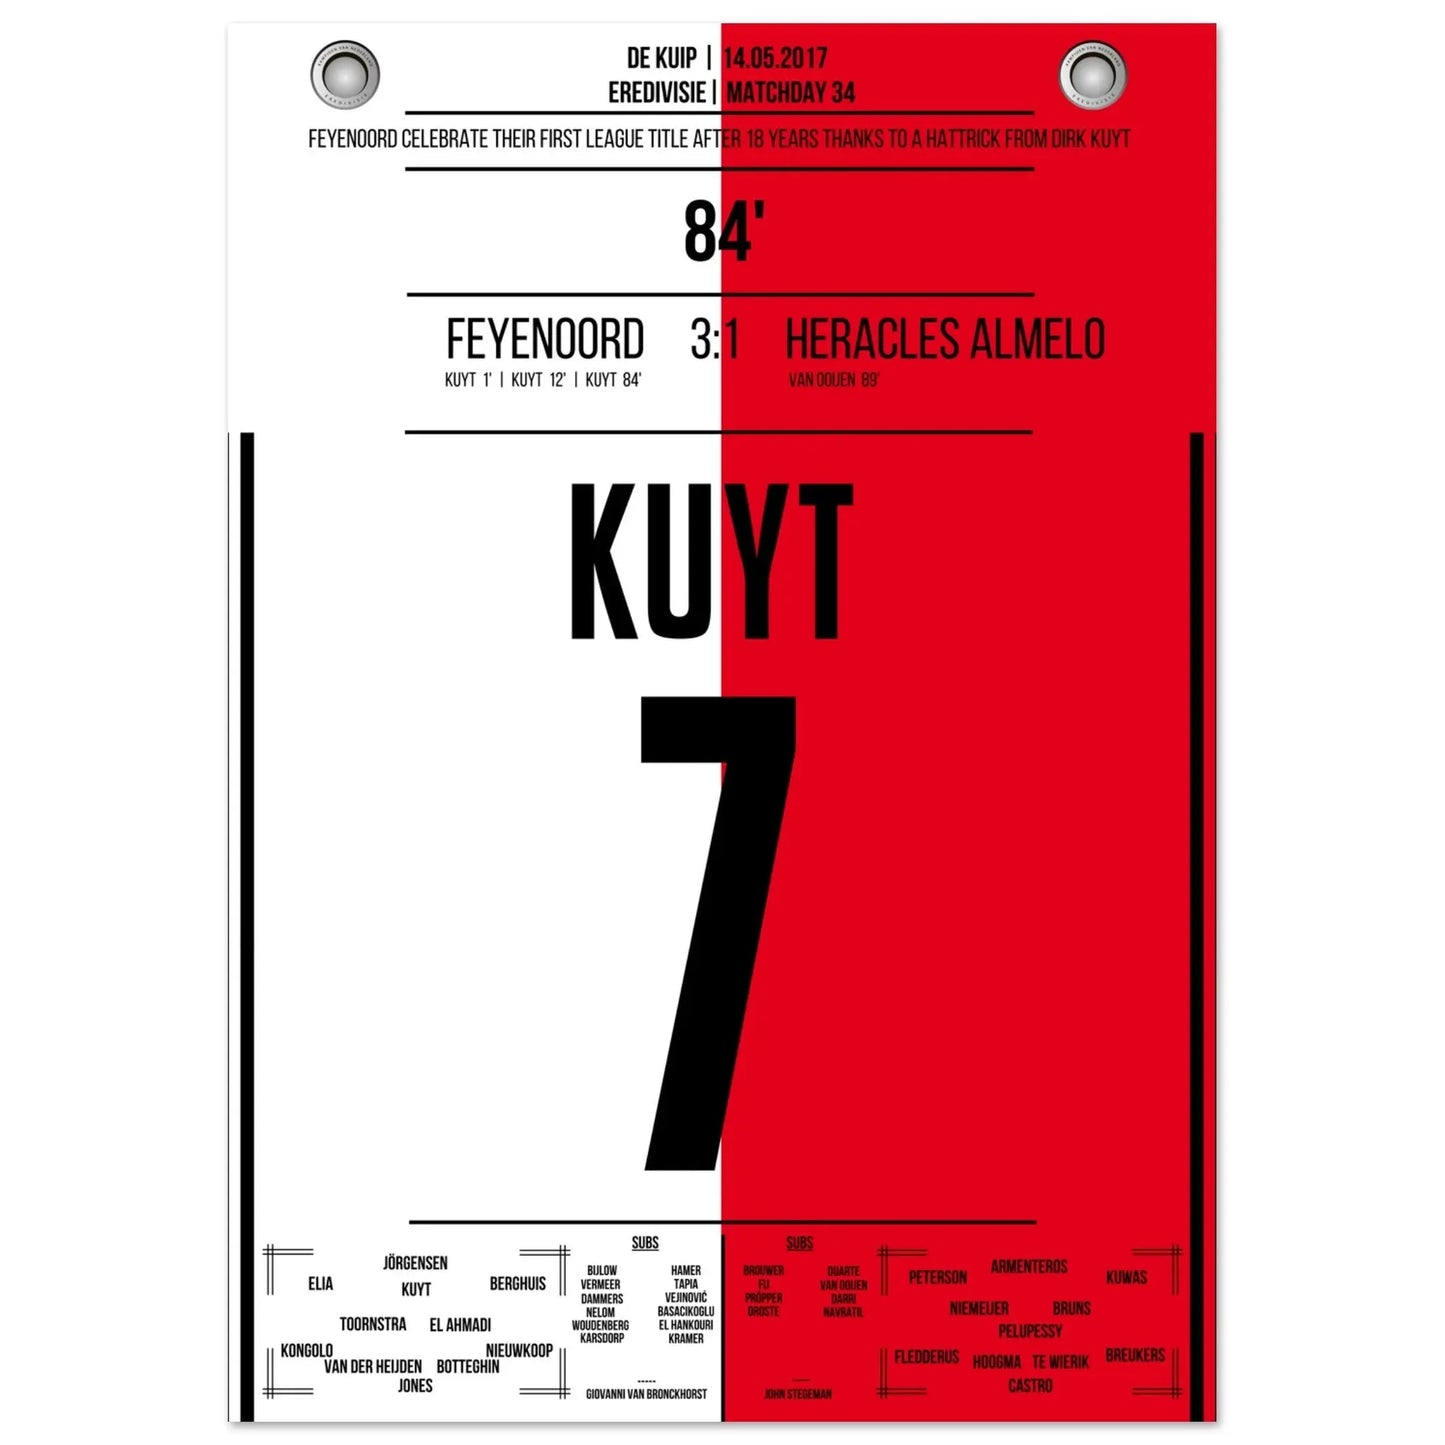 Un triplé de Kuyt pour le premier titre de champion de Feyenoord en 18 ans